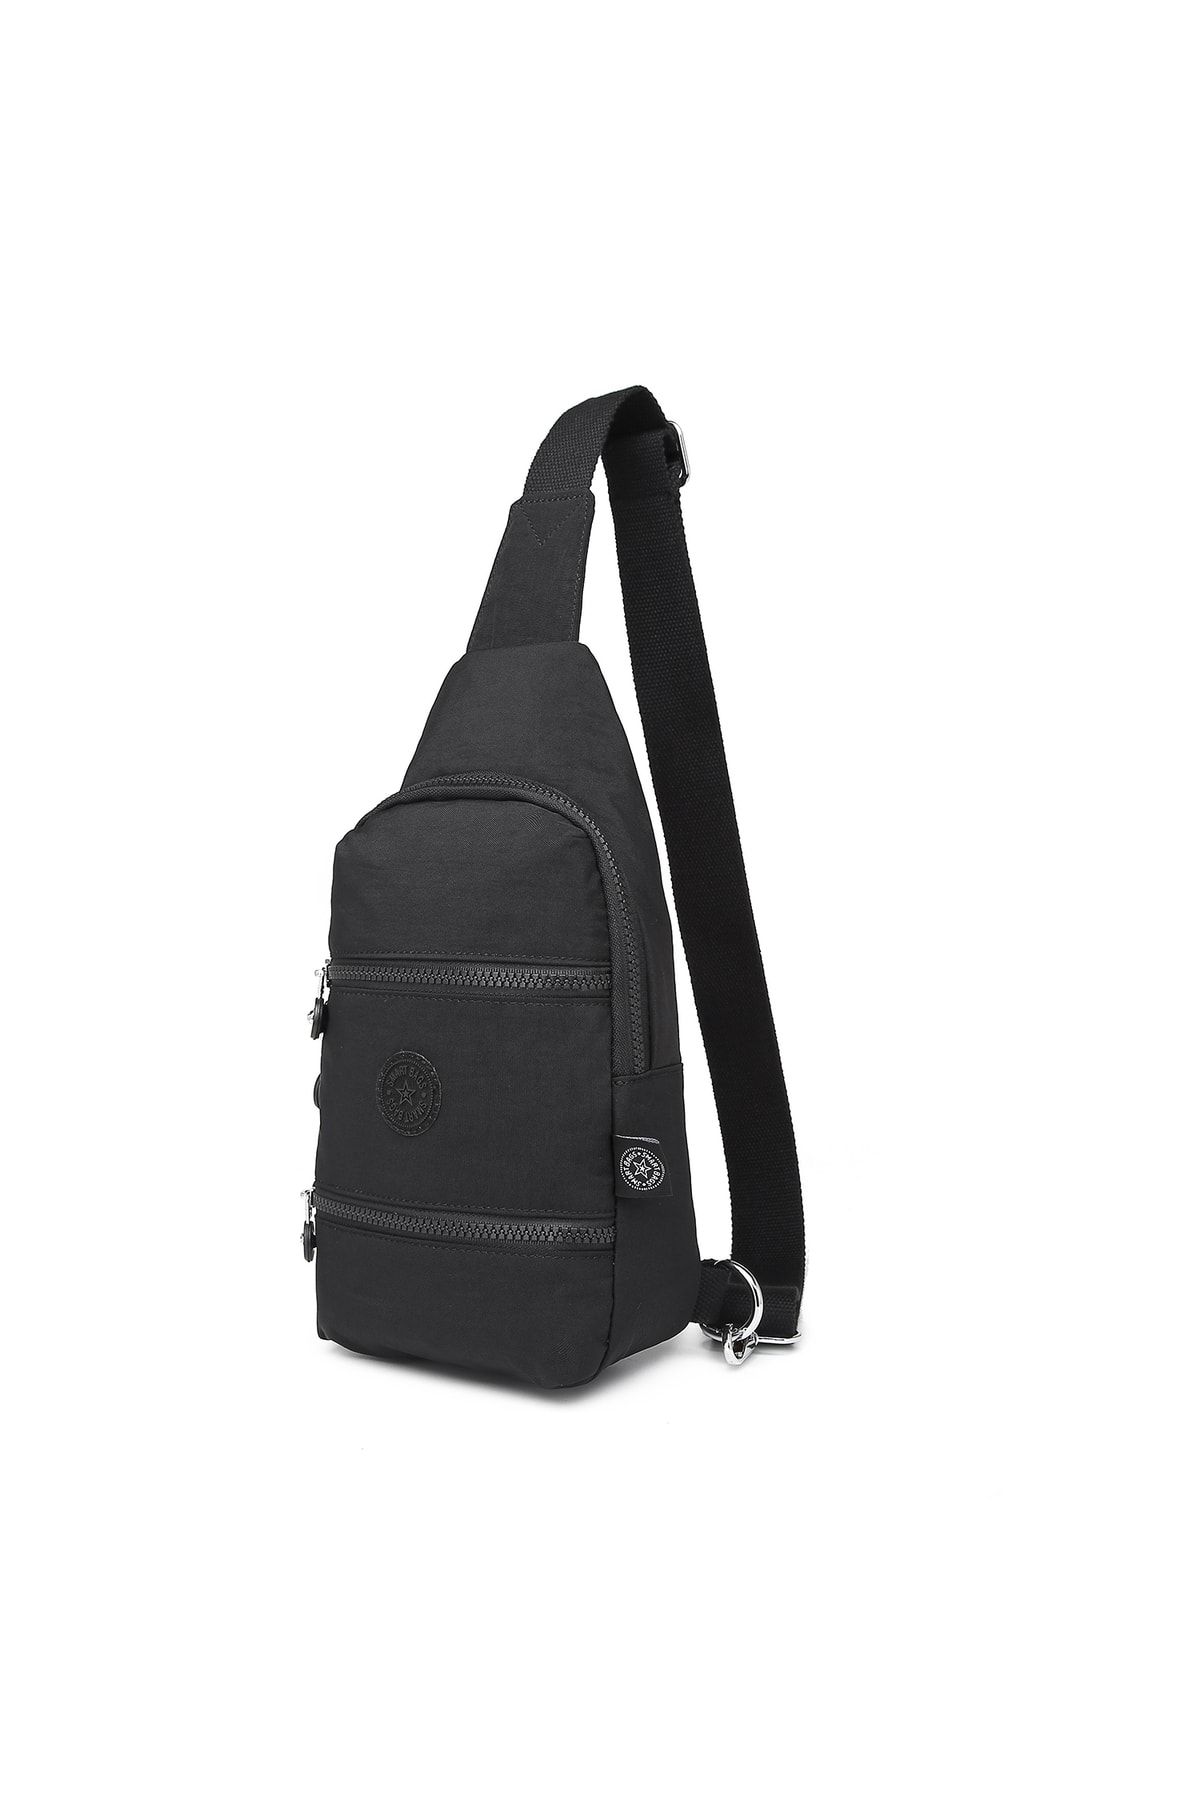 Smart Bags Bodybag Postacı Kadın Çantası Krinkıl Kumaş 3051 Siyah